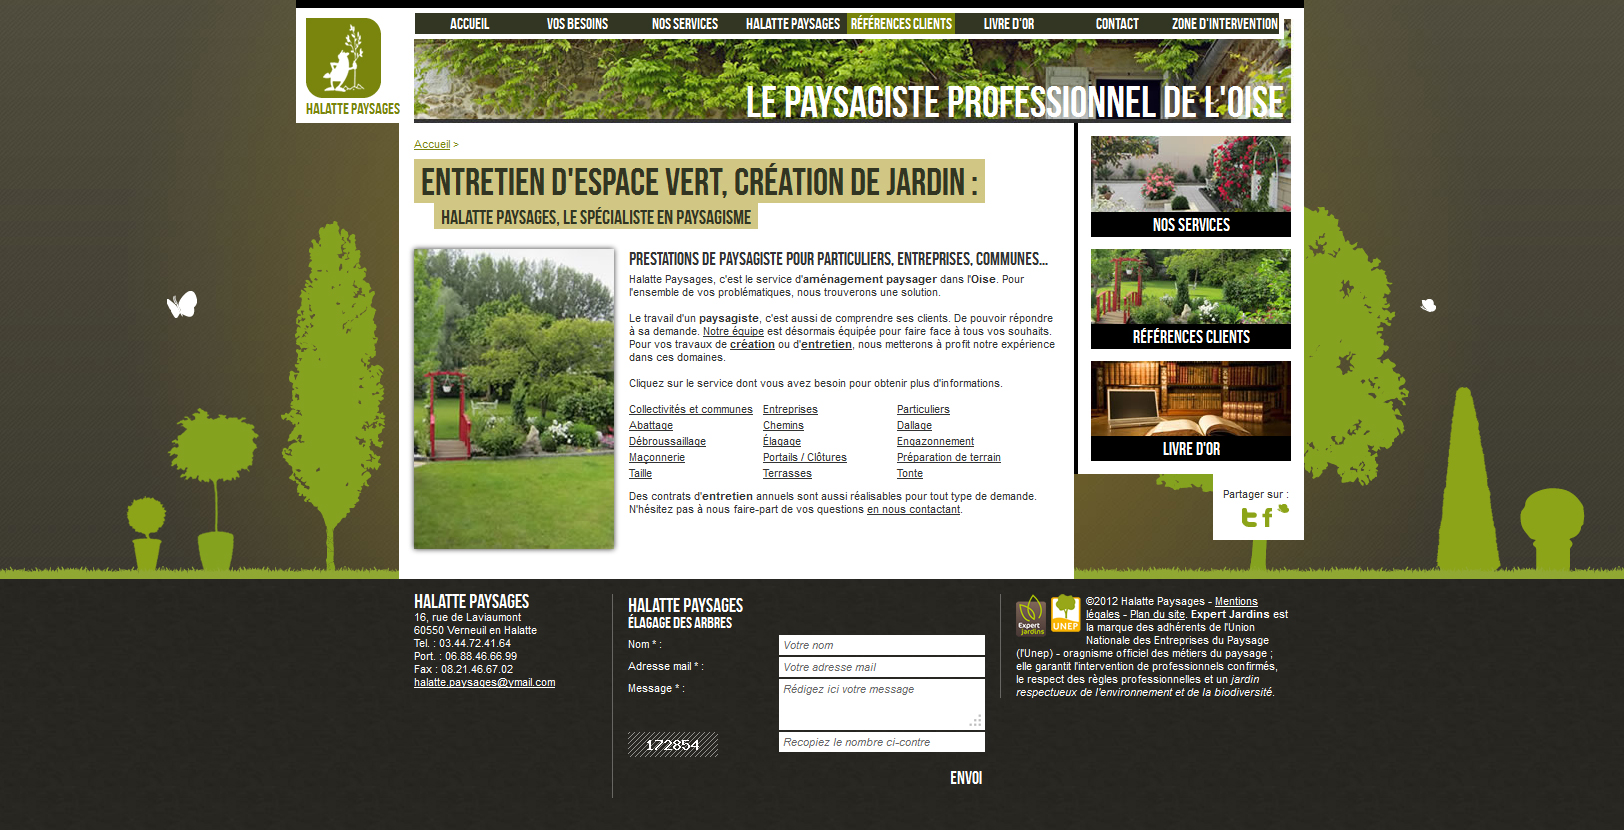 http://www.halatte-paysages.fr/index.php